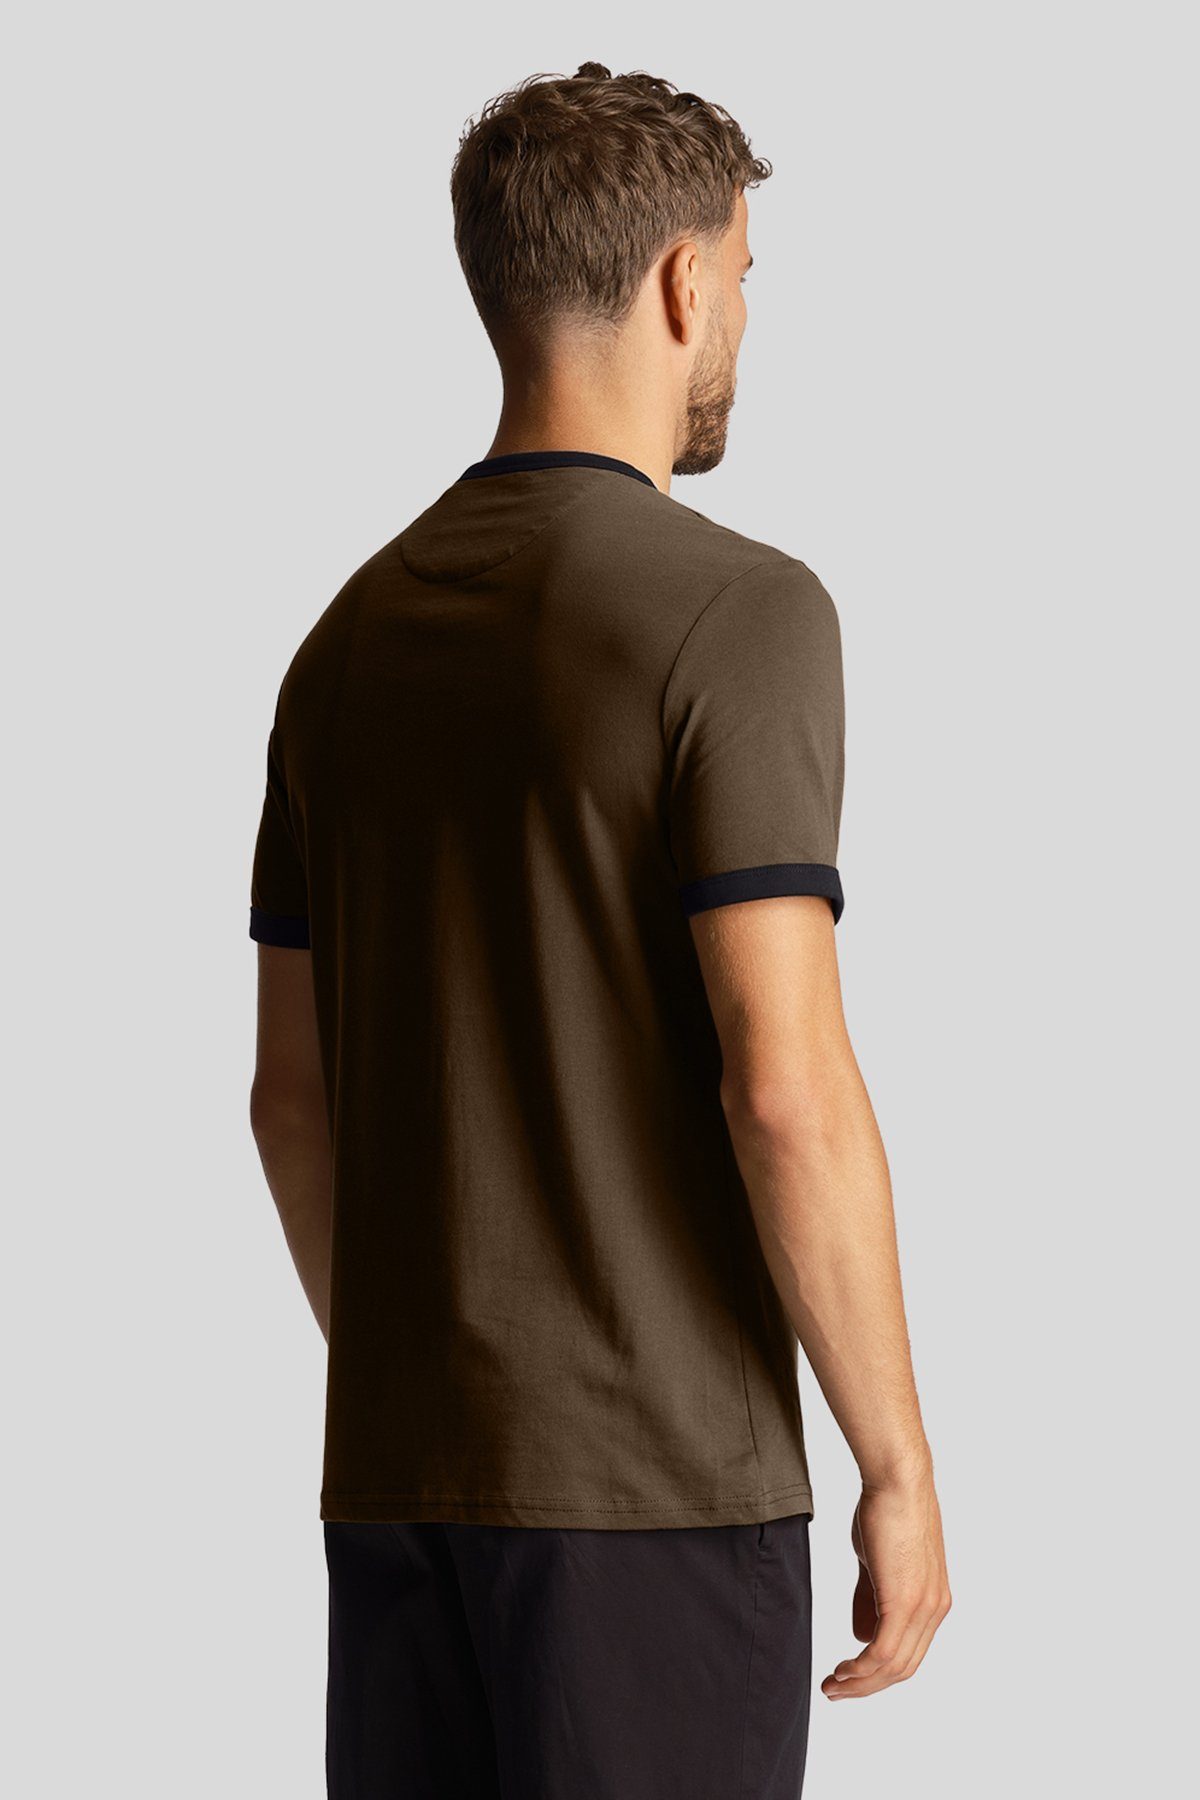 Kontrastierender T-Shirt Scott & Lyle Oliv/Tiefschwarz Mit Zierleiste